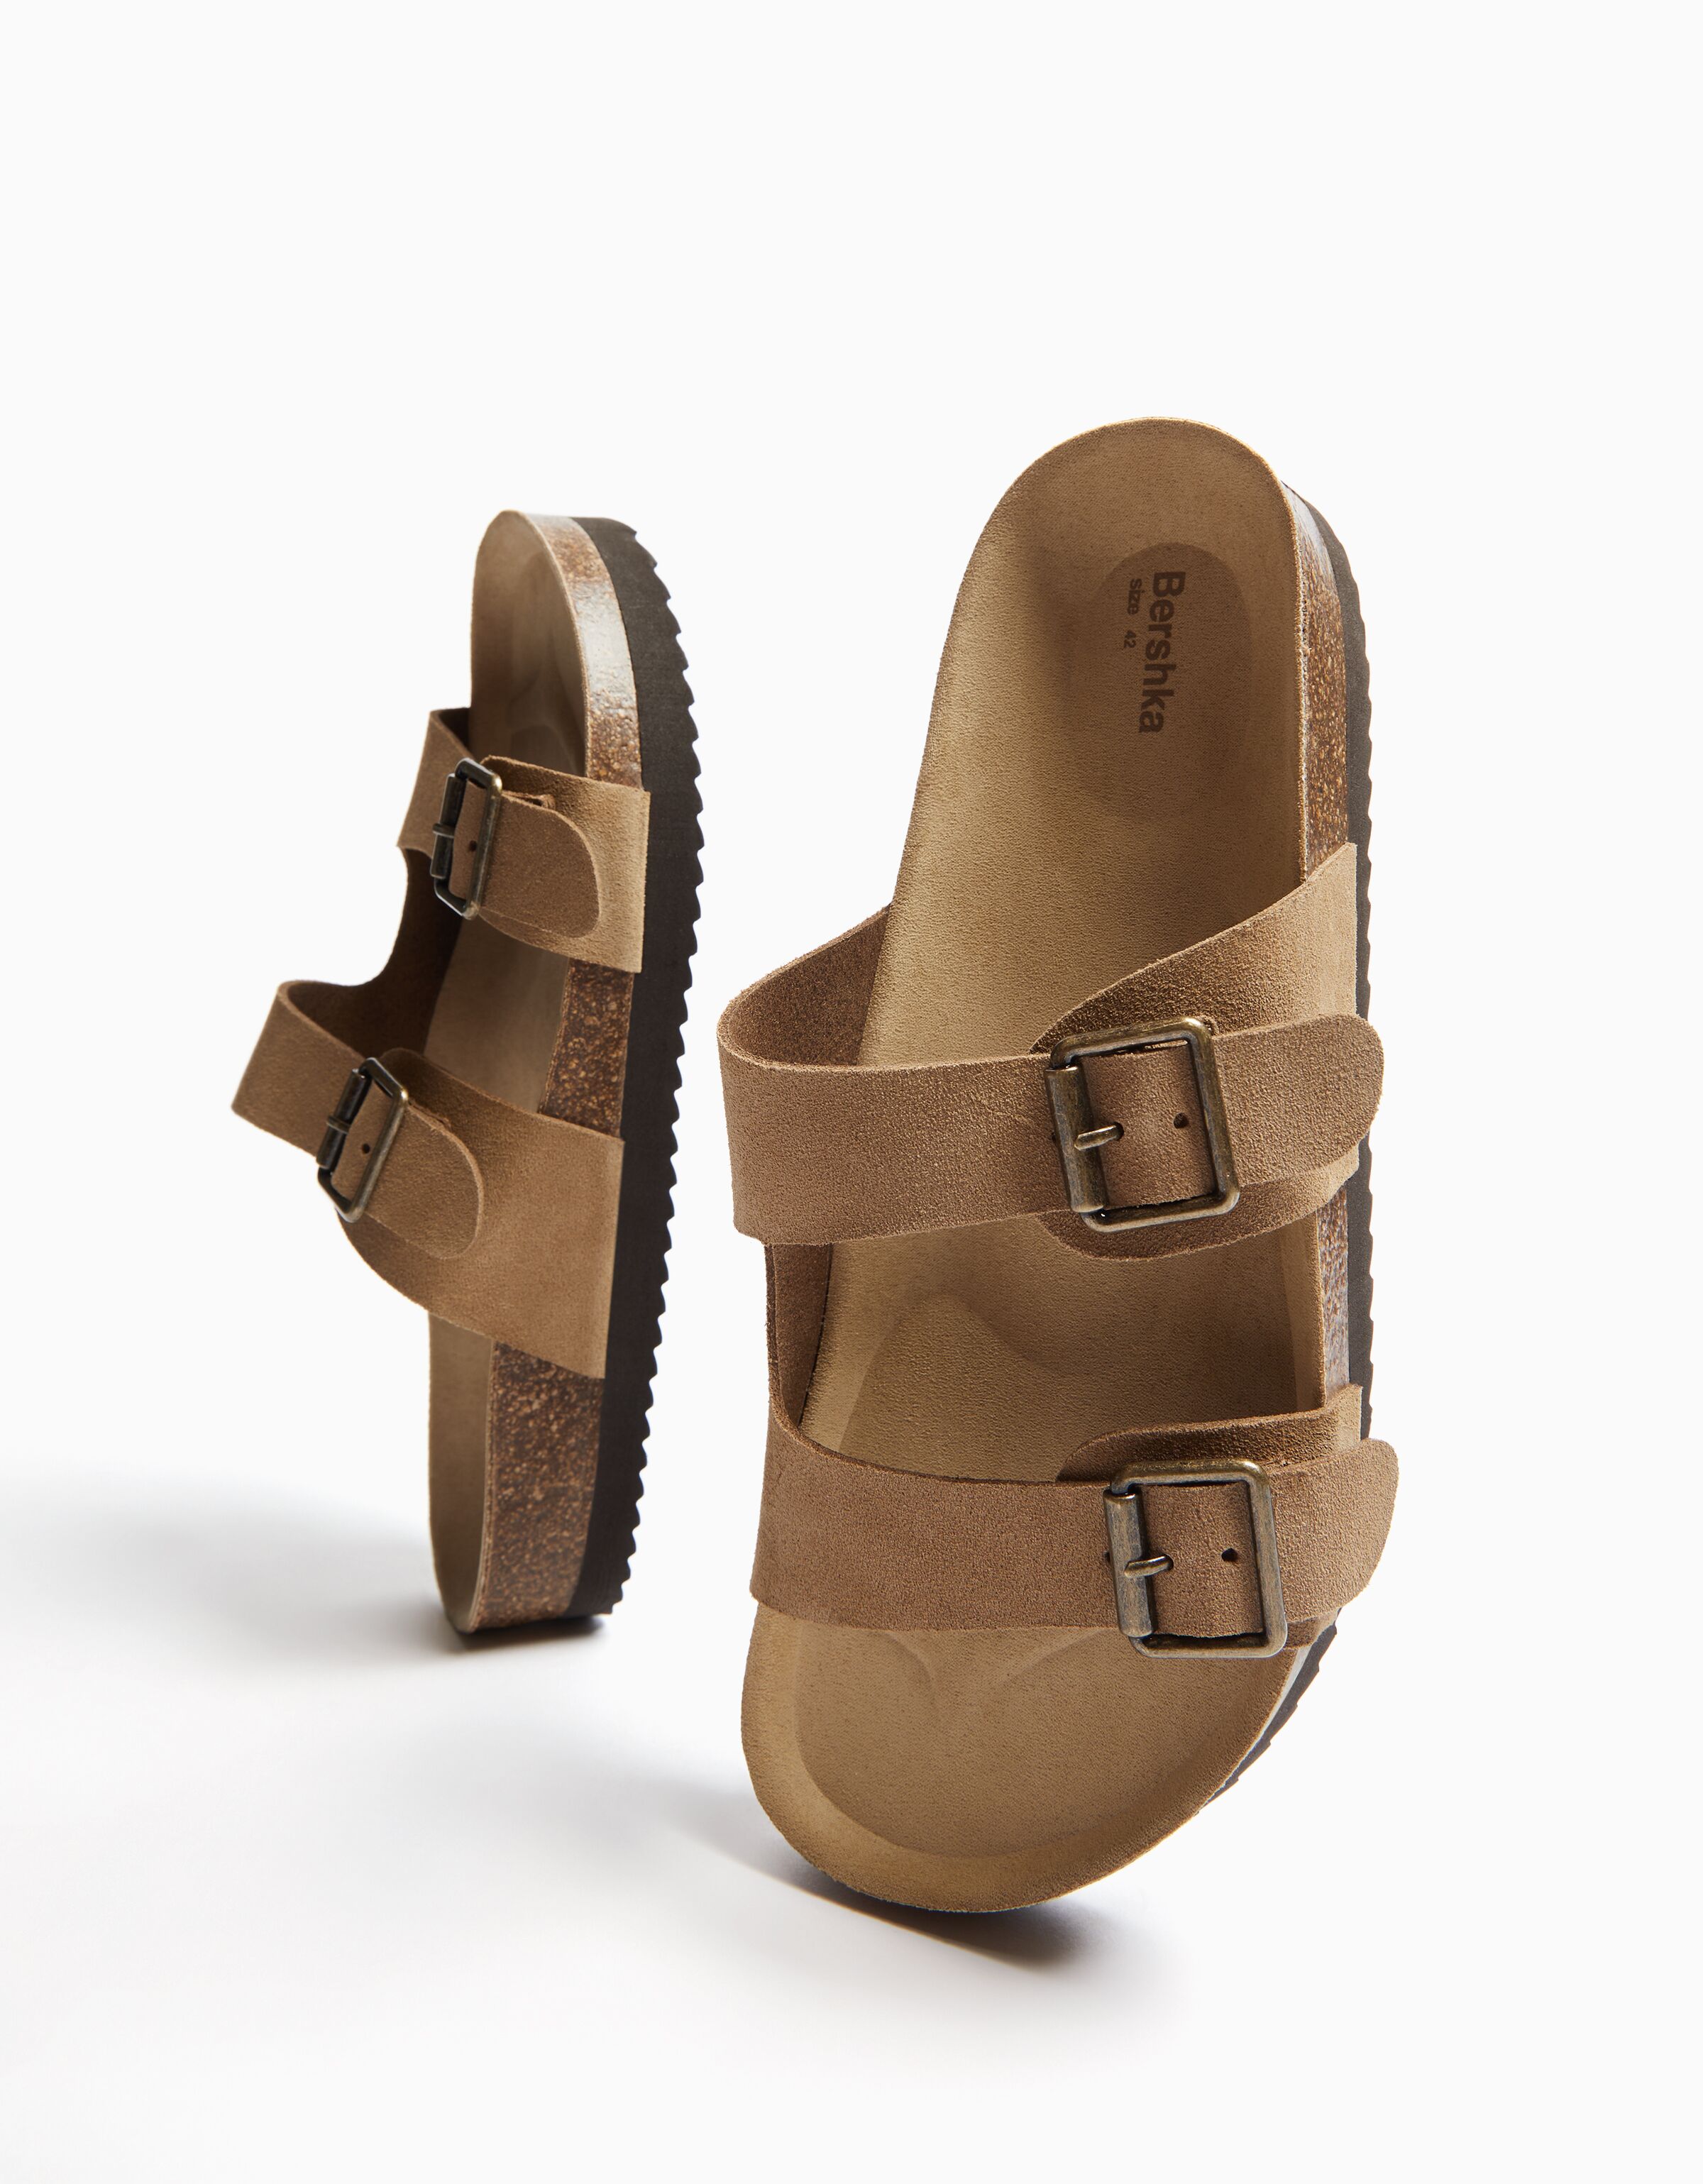 Men’s LEATHER sandals with buckles - Women | Bershka